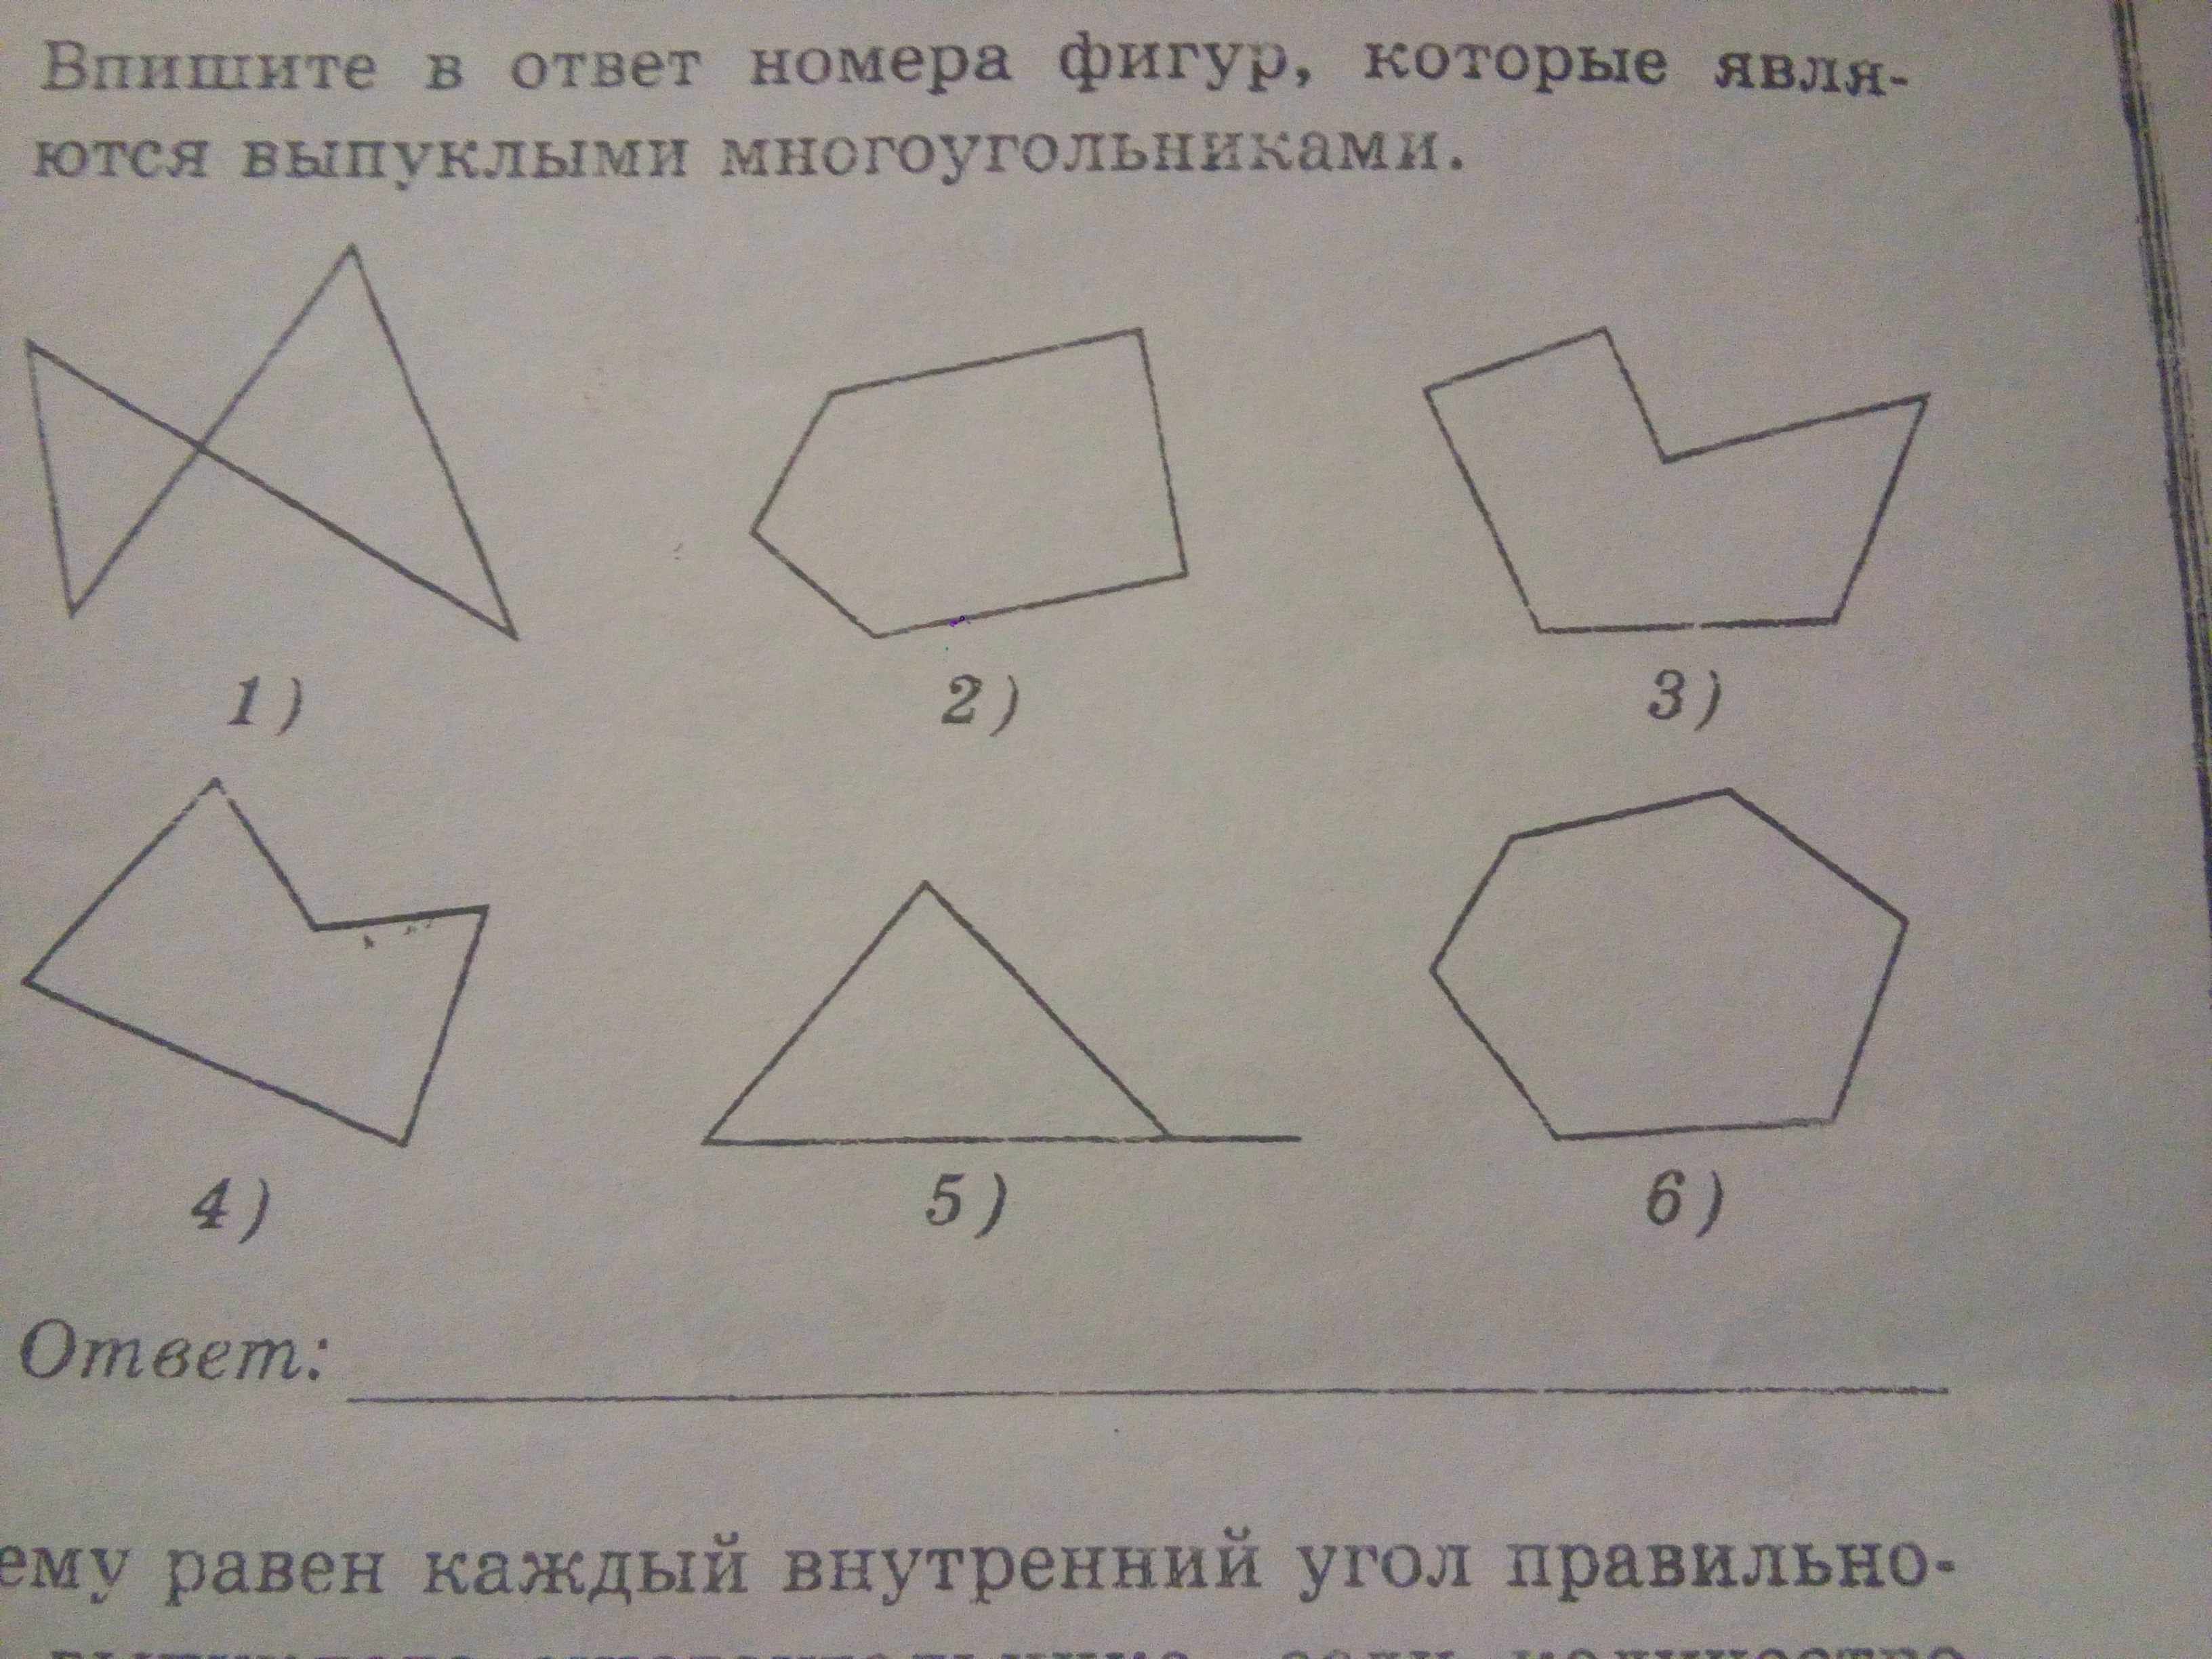 Запиши соответствующие номера фигур многоугольники